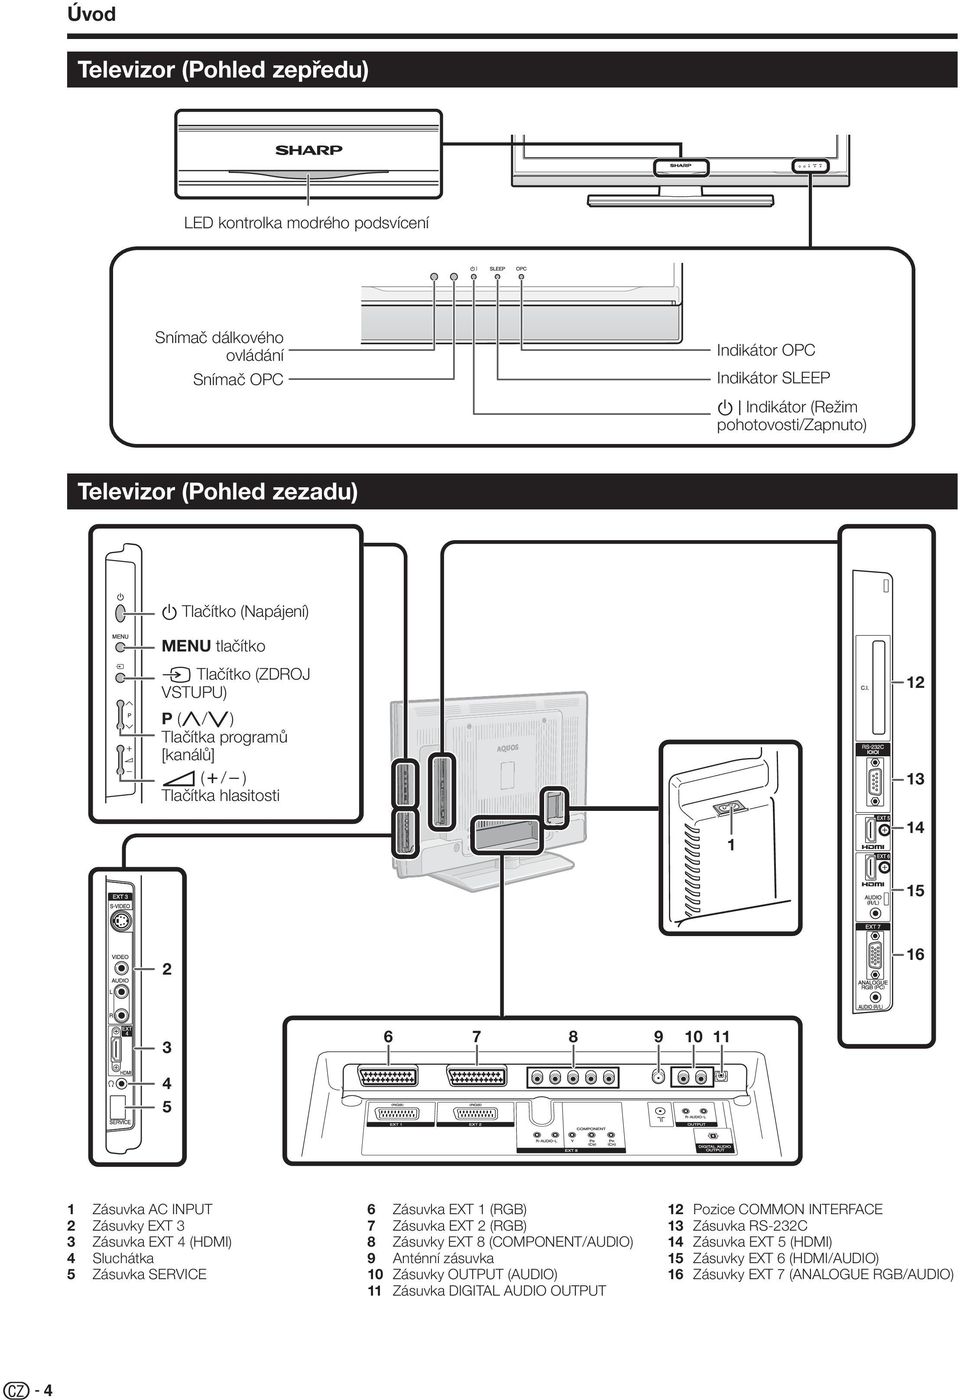 Zásuvka AC INPUT Zásuvky EXT Zásuvka EXT 4 (HDMI) 4 Sluchátka 5 Zásuvka SERVICE 6 Zásuvka EXT (RGB) 7 Zásuvka EXT (RGB) 8 Zásuvky EXT 8 (COMPONENT/AUDIO) 9 Anténní zásuvka 0